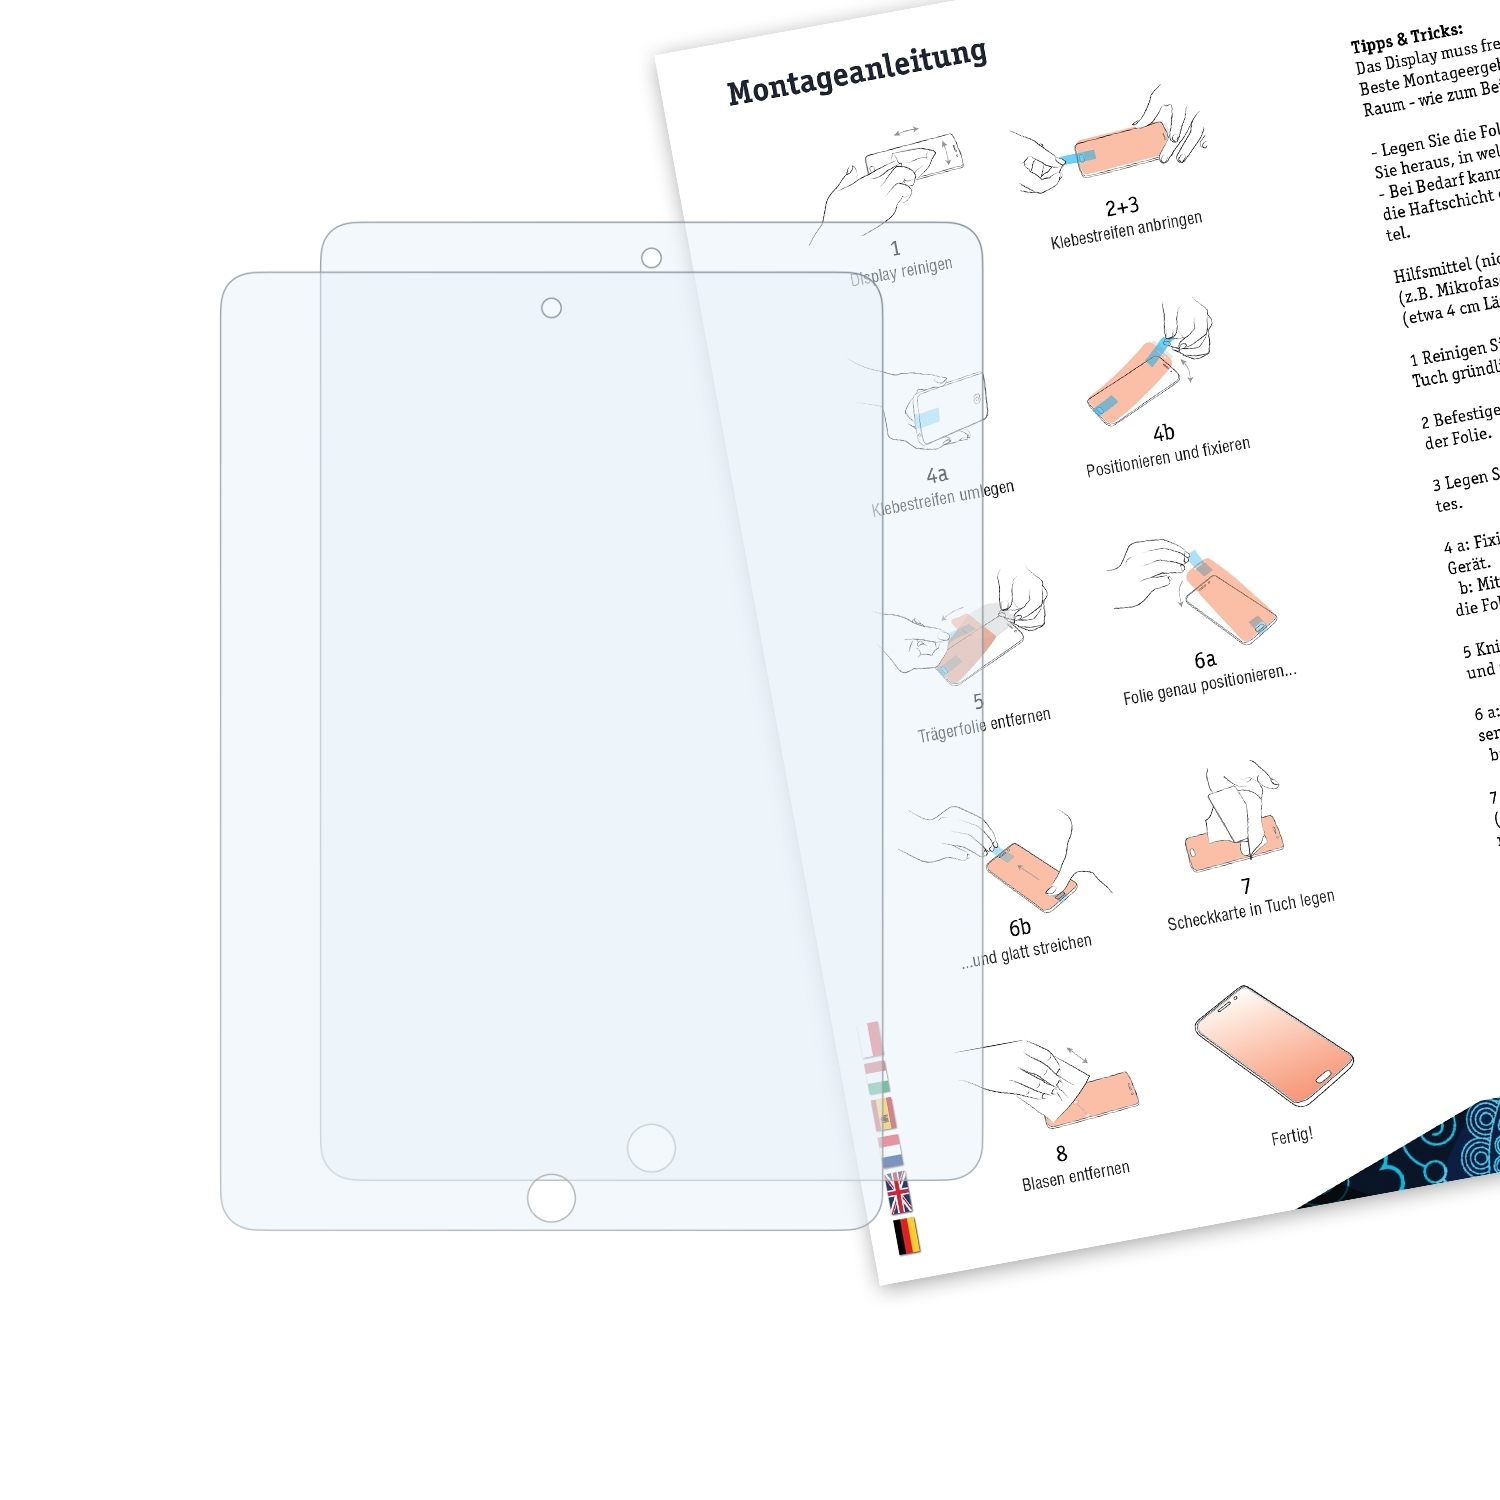 2x BRUNI (2021)) iPad Basics-Clear Apple Schutzfolie(für